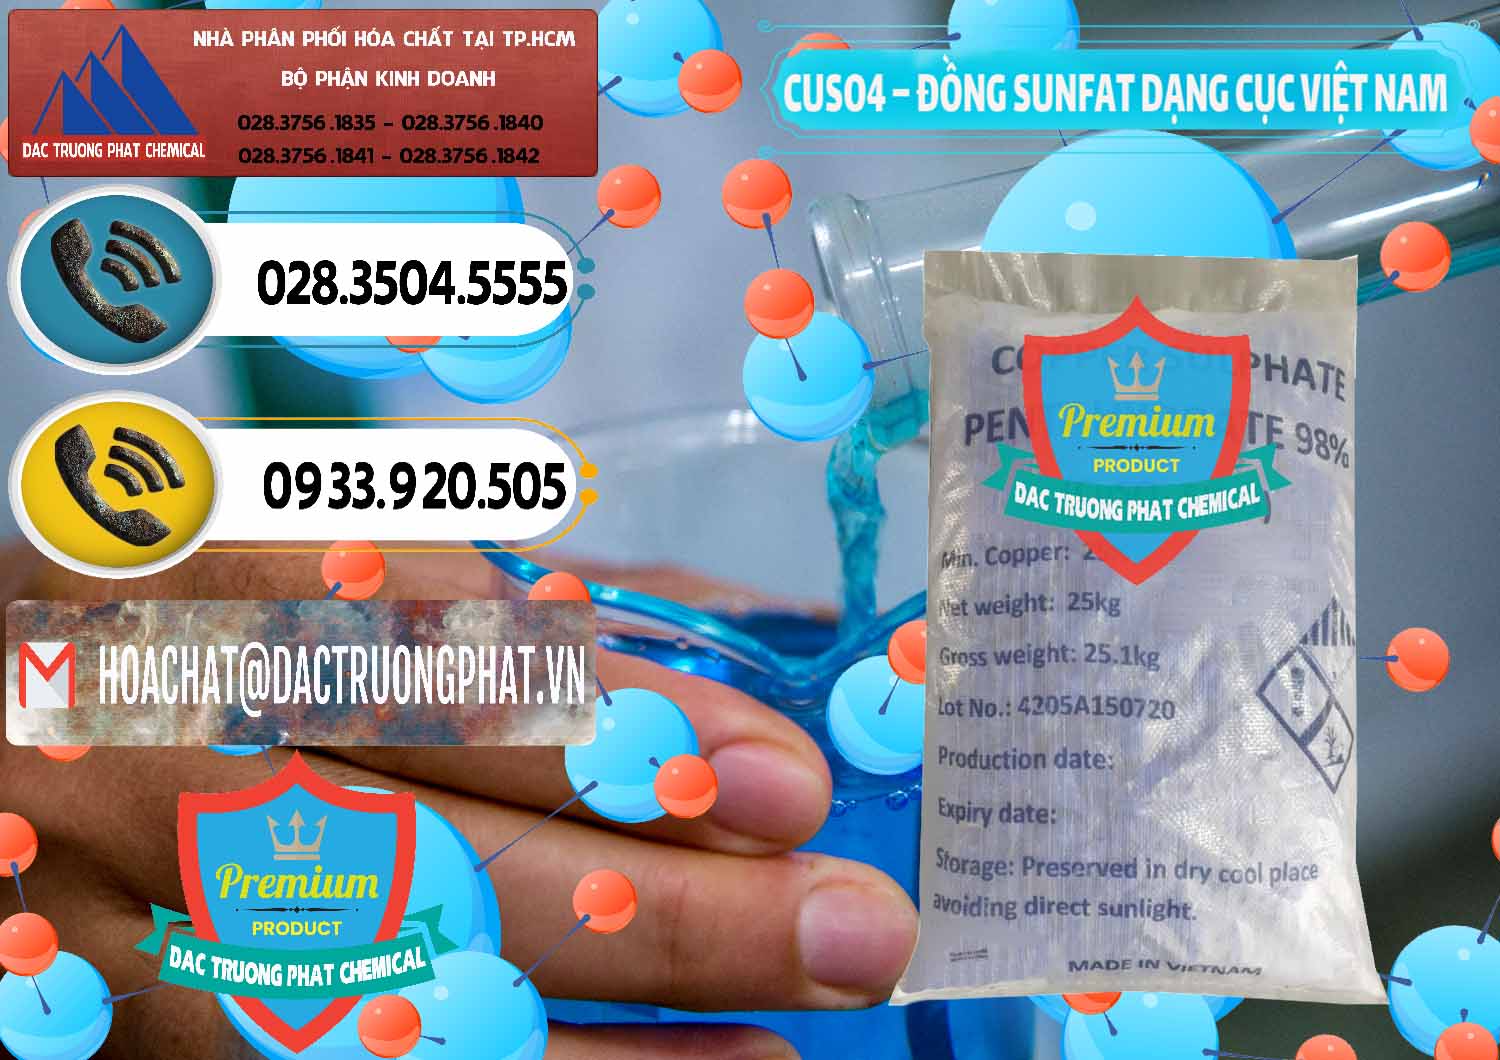 Nơi chuyên phân phối & bán CUSO4 – Đồng Sunfat Dạng Cục Việt Nam - 0303 - Công ty cung ứng - bán hóa chất tại TP.HCM - hoachatdetnhuom.vn